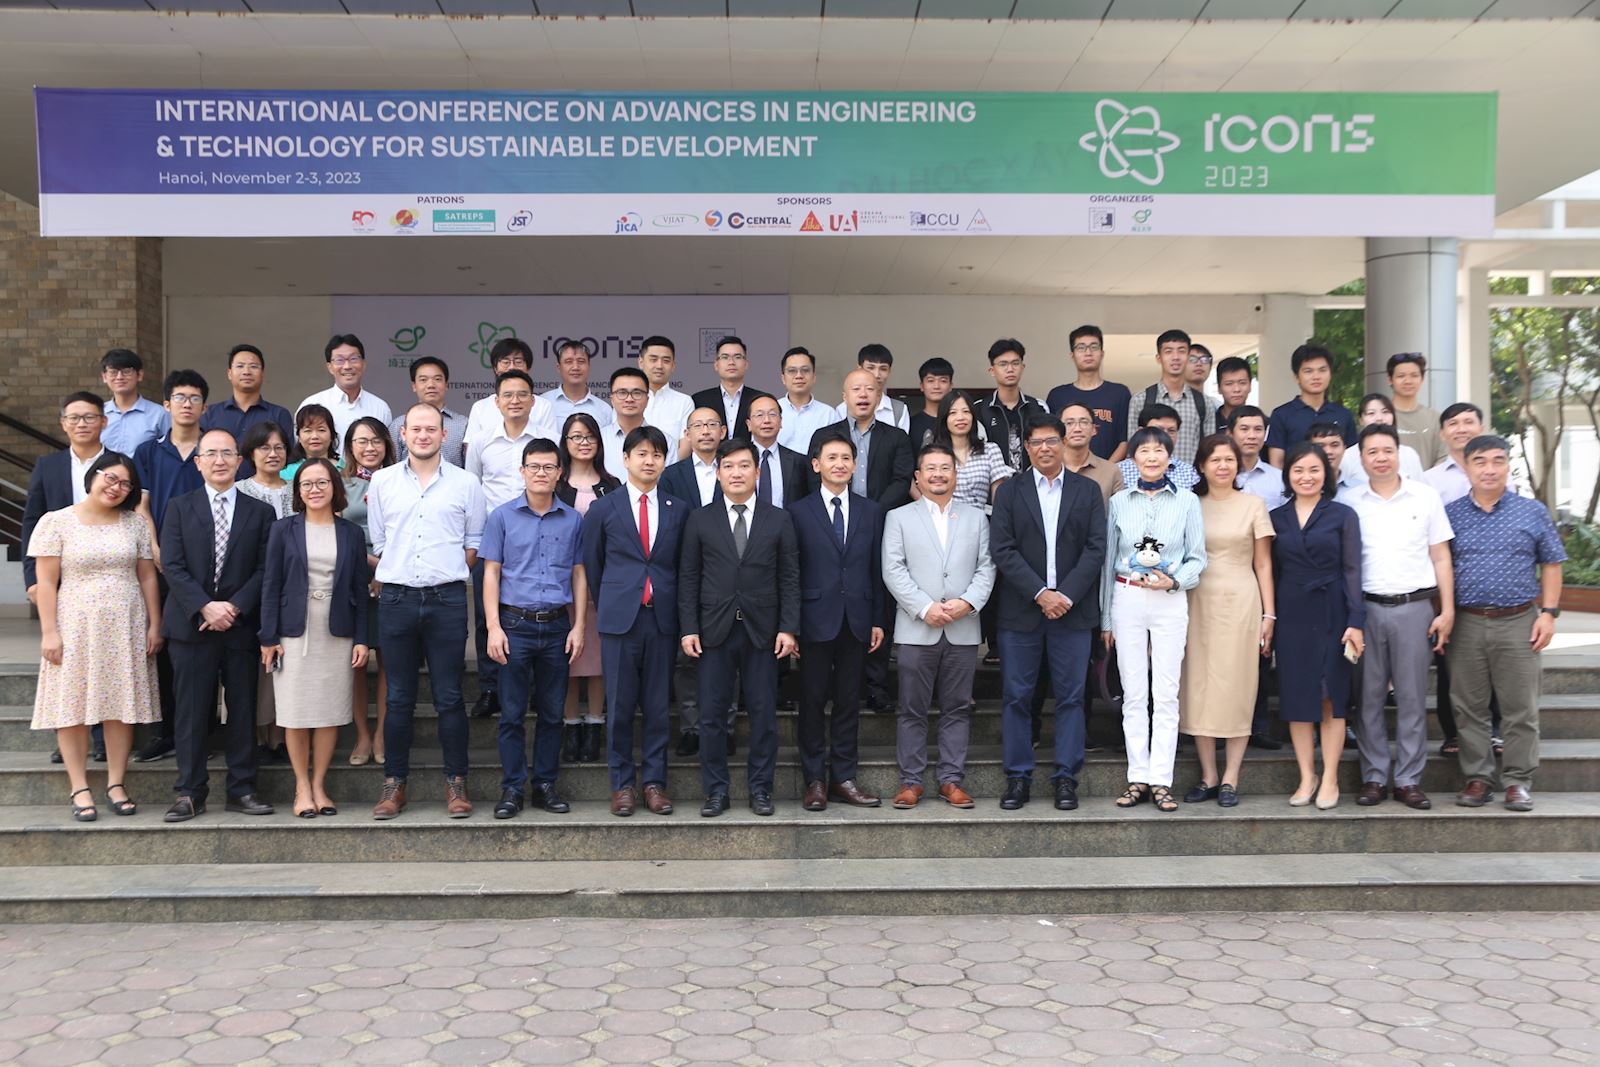 Hội nghị quốc tế lần Thứ nhất về những tiến bộ trong kỹ thuật và công nghệ hướng đến phát triển bền vững